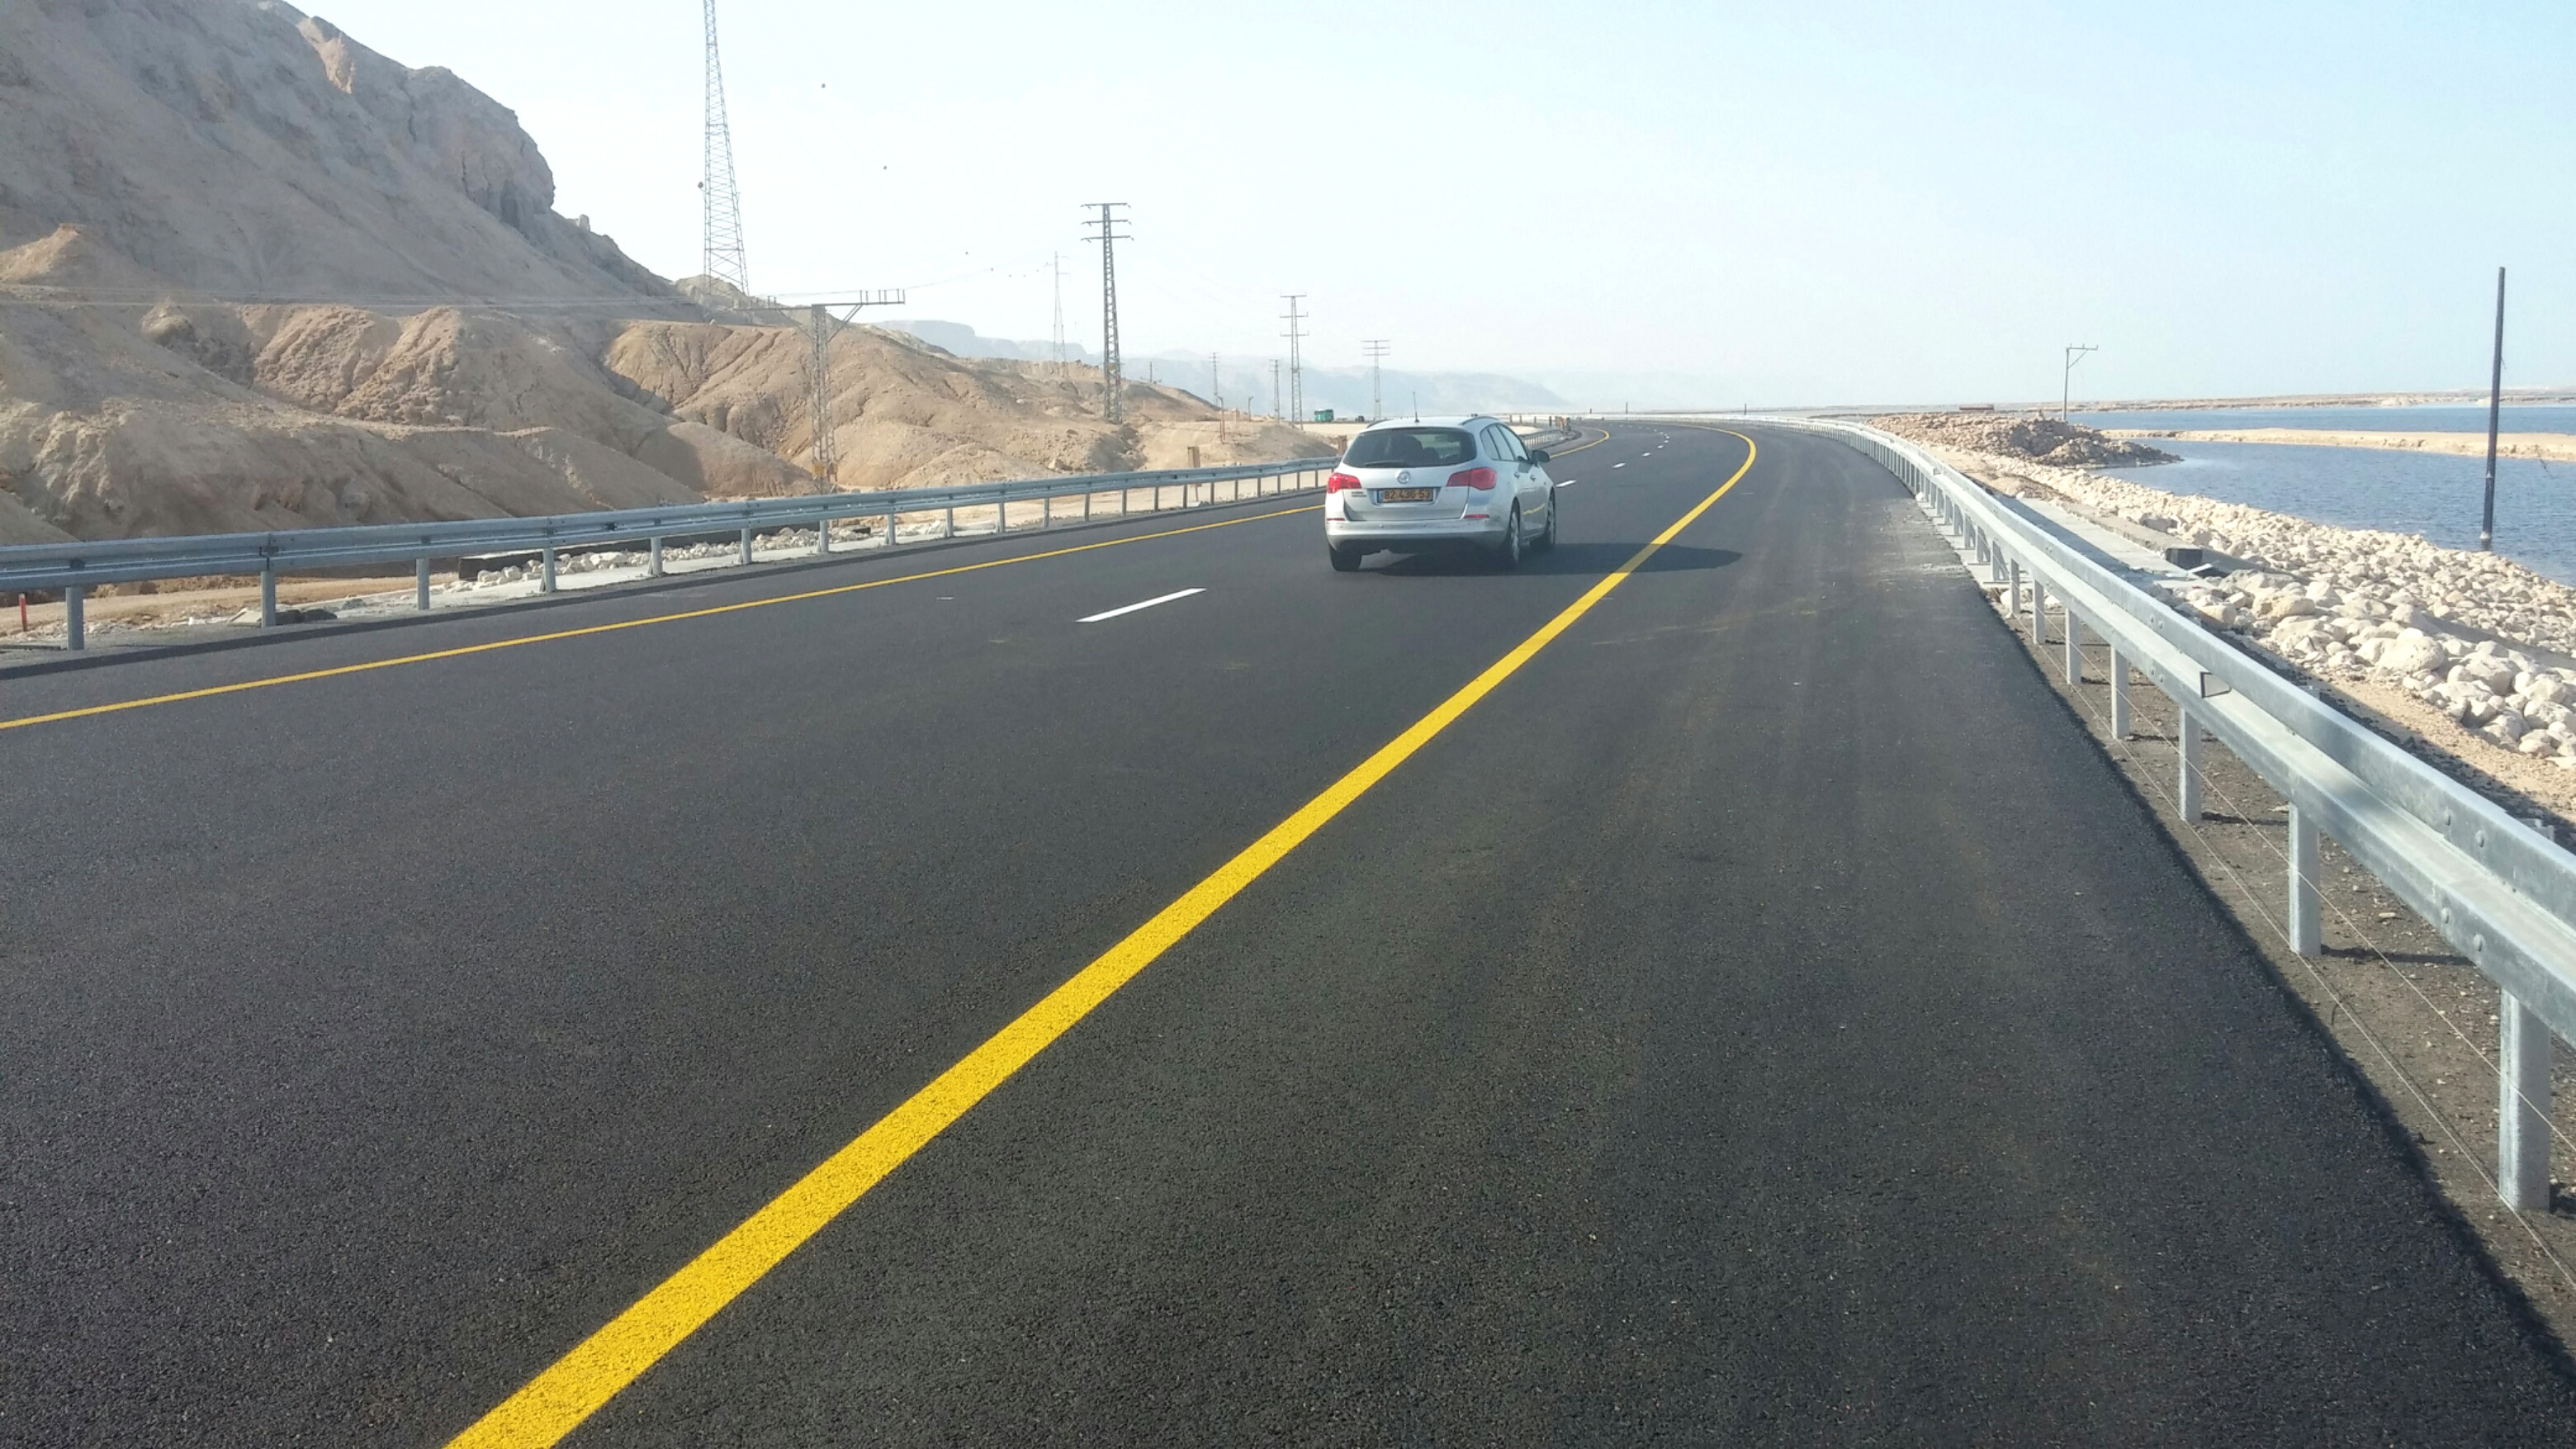 תמונה מתארת לכתבה פרויקט הגבהת כביש 90 מקטע דרומי הסתיים - עובר לידי אחזקת חברת נתיבי ישראל